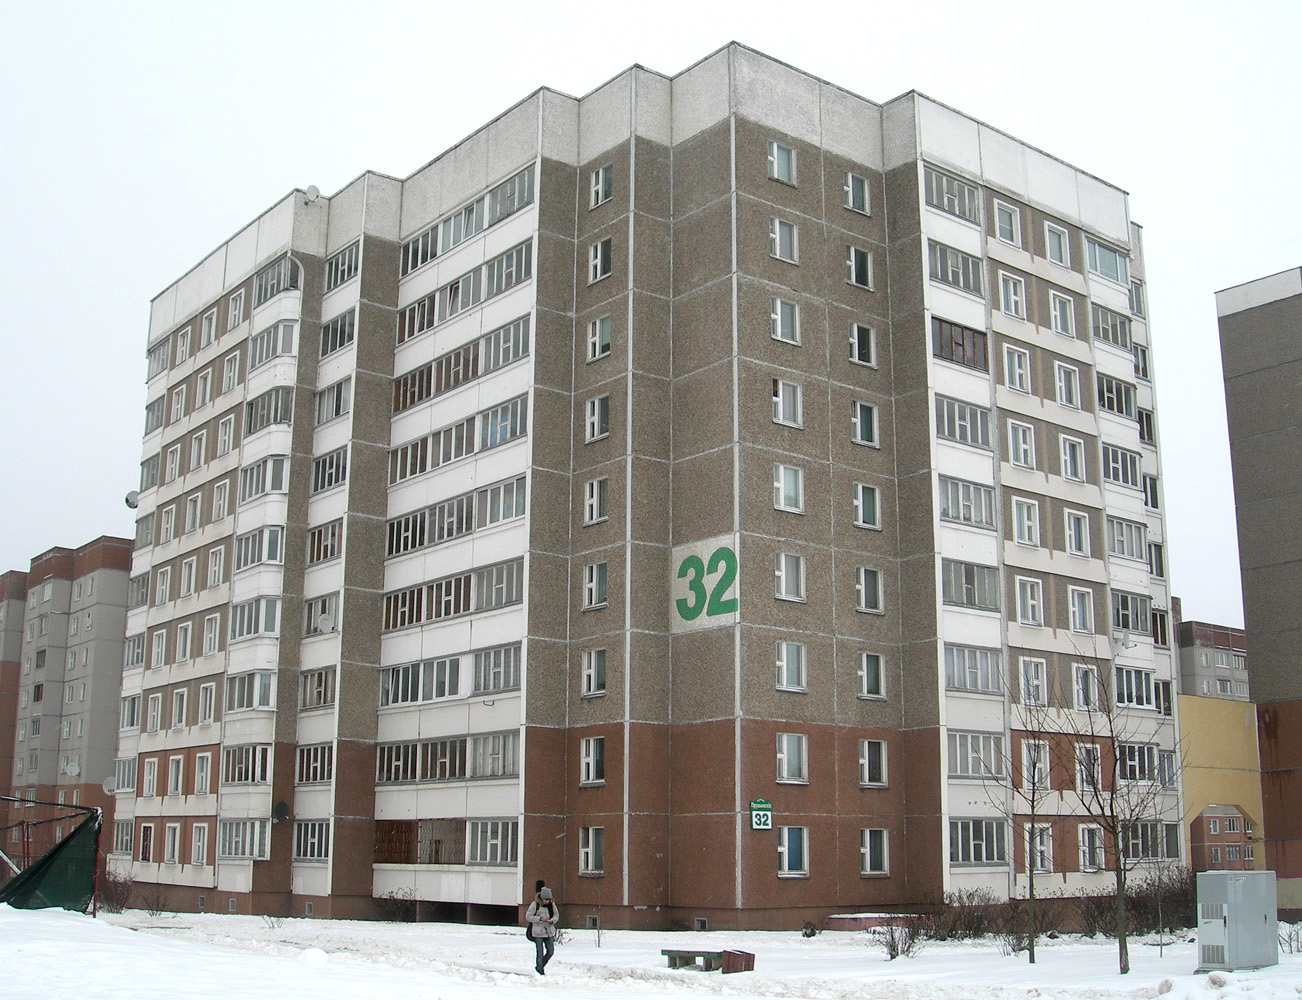 Минск, Улица Прушинских, 32